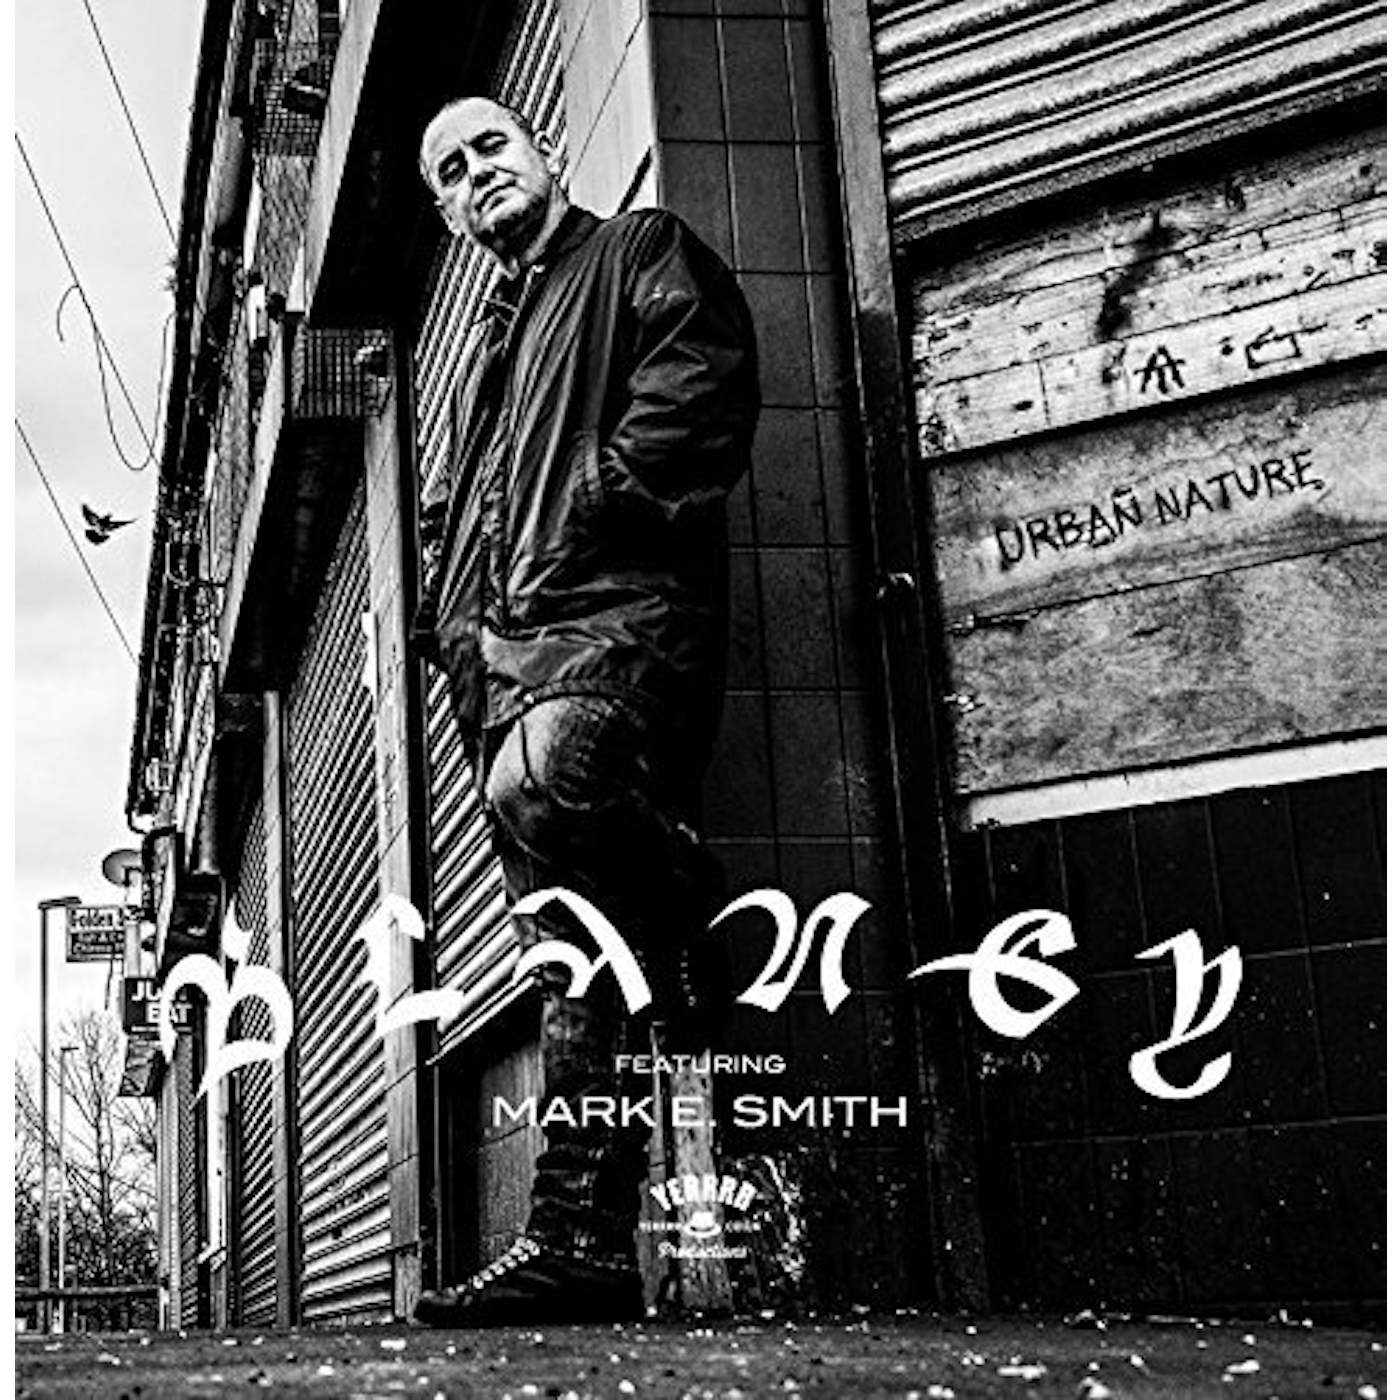 Blaney / Mark E Smith URBAN NATURE CD